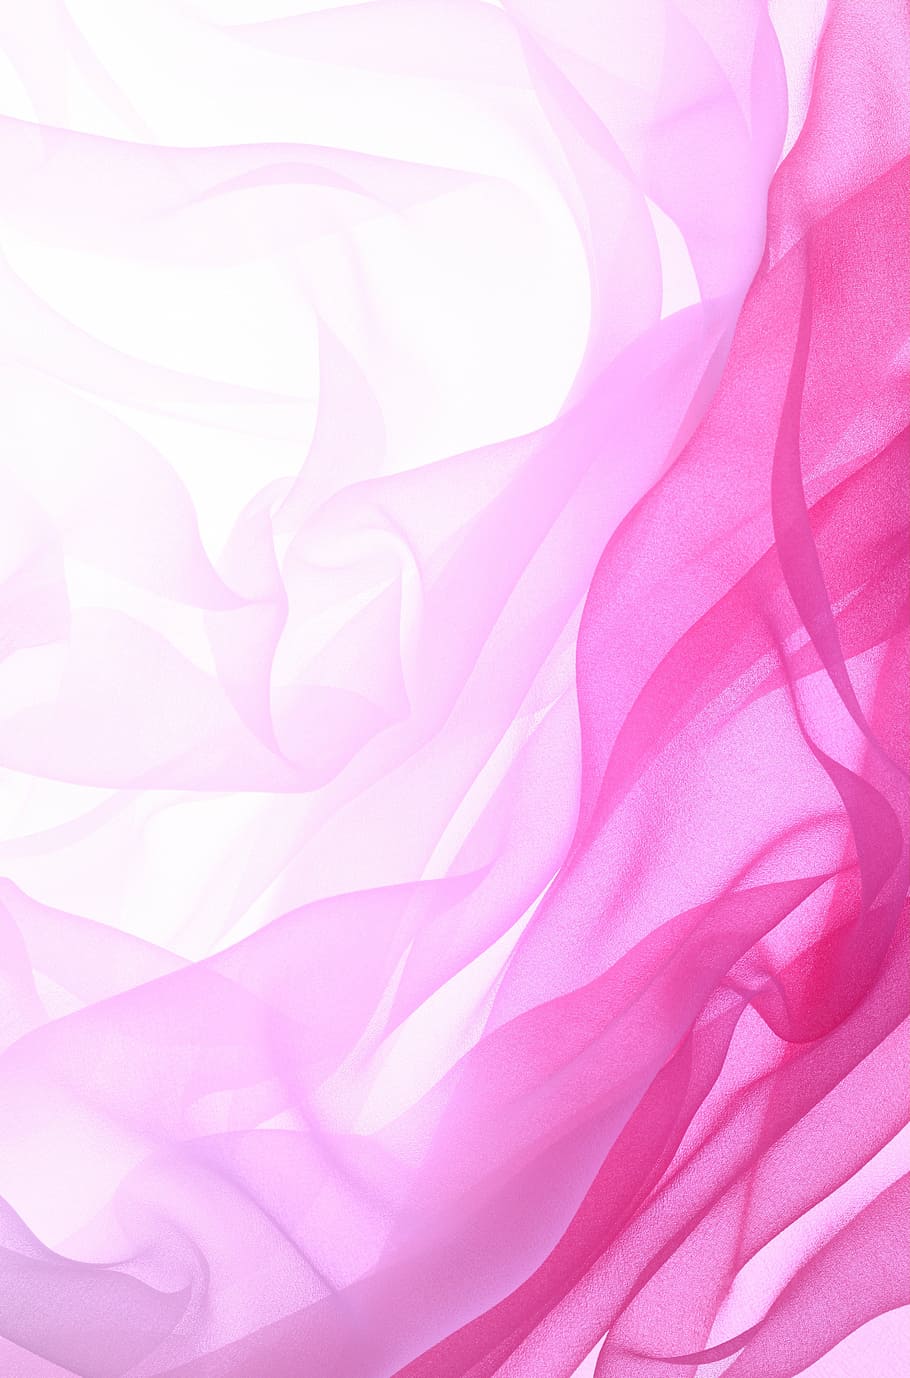 ピンクのテキスタイル, 素材, インク, 芸術的な概念, チュール, グラデーション, ピンク, 抽象, 背景, パターン